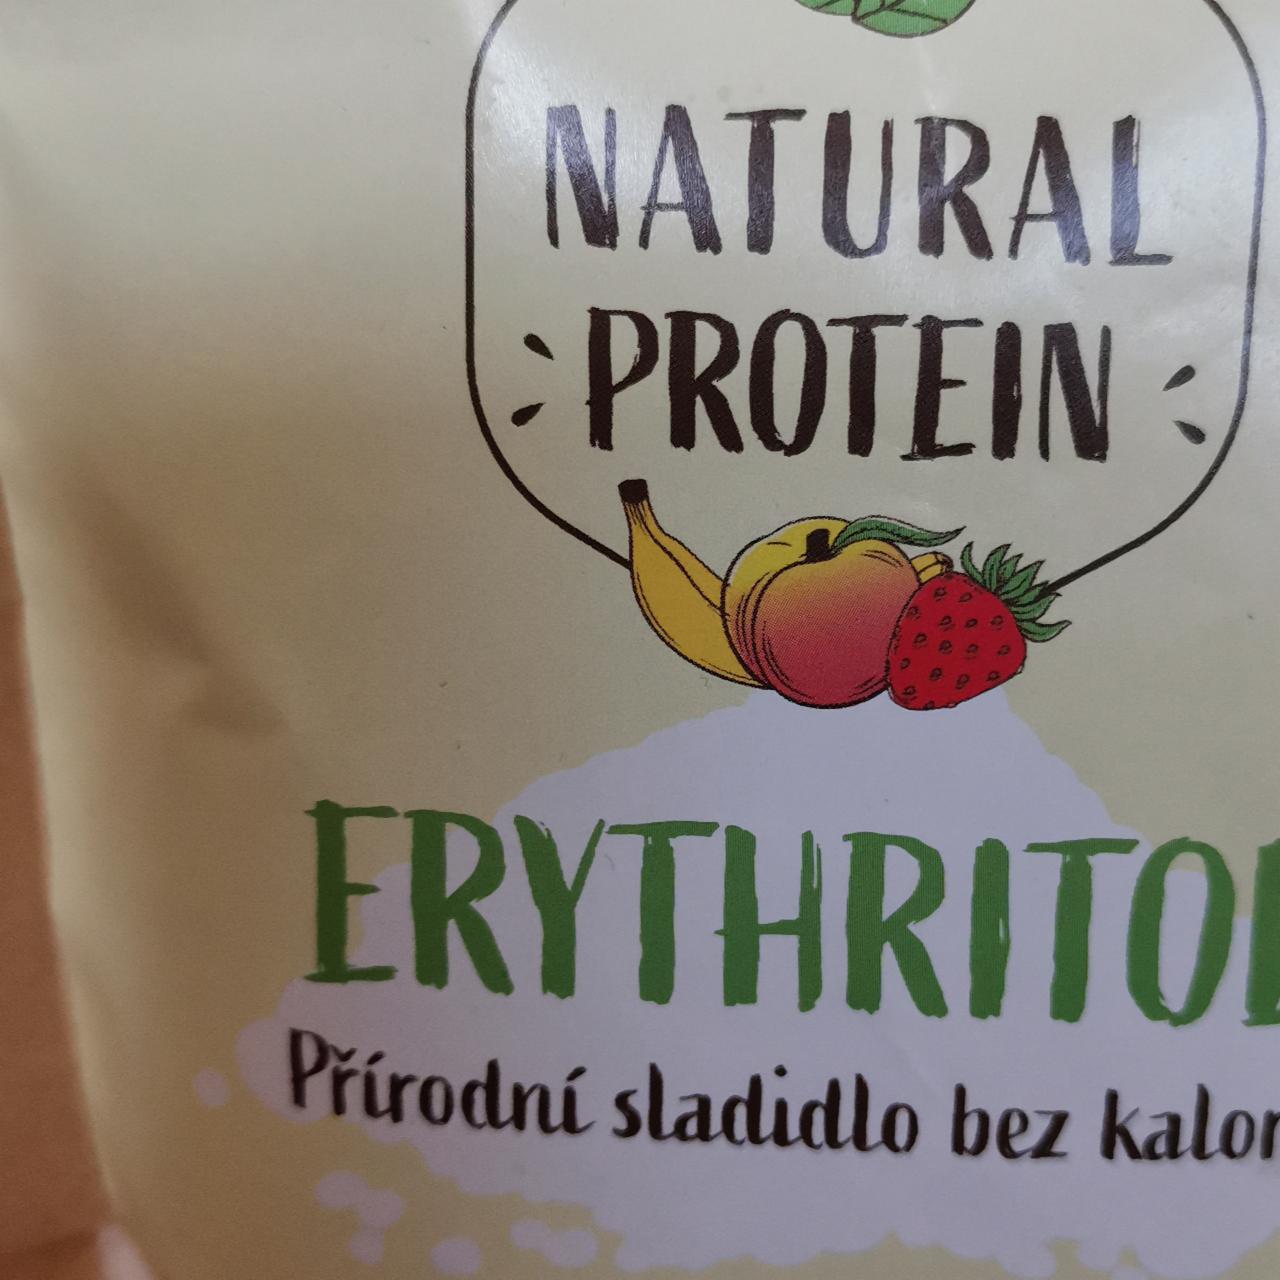 Fotografie - Erythritol přírodní sladidlo bez kalorií Natural protein